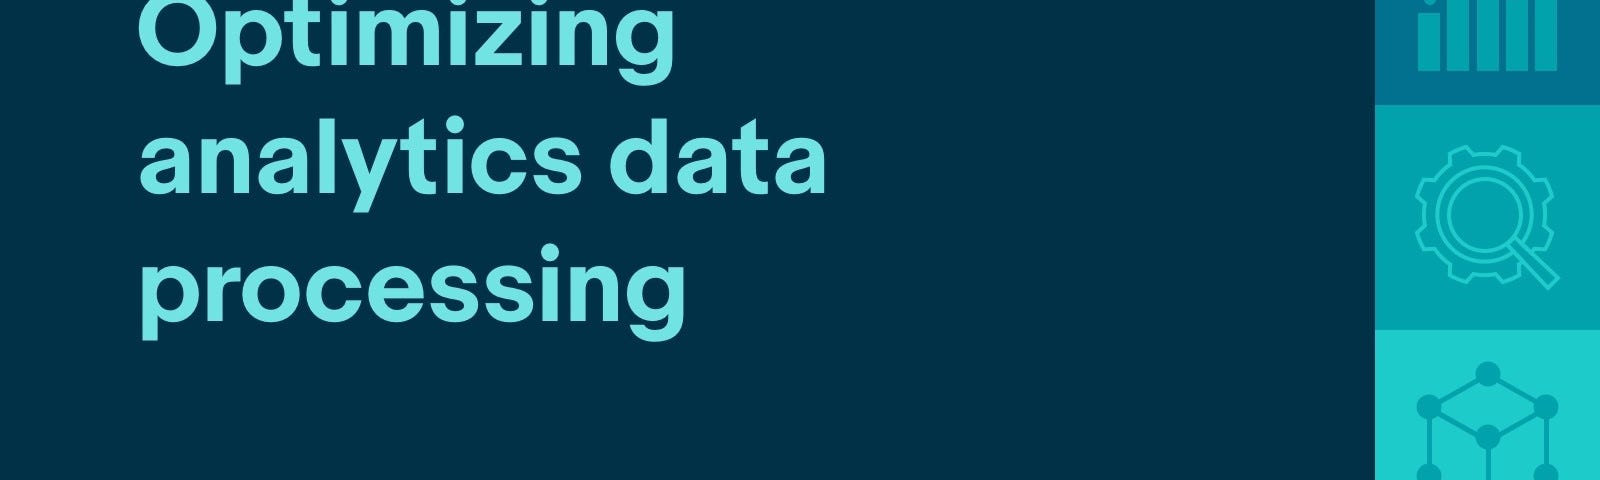 Optimizing analytics data processing